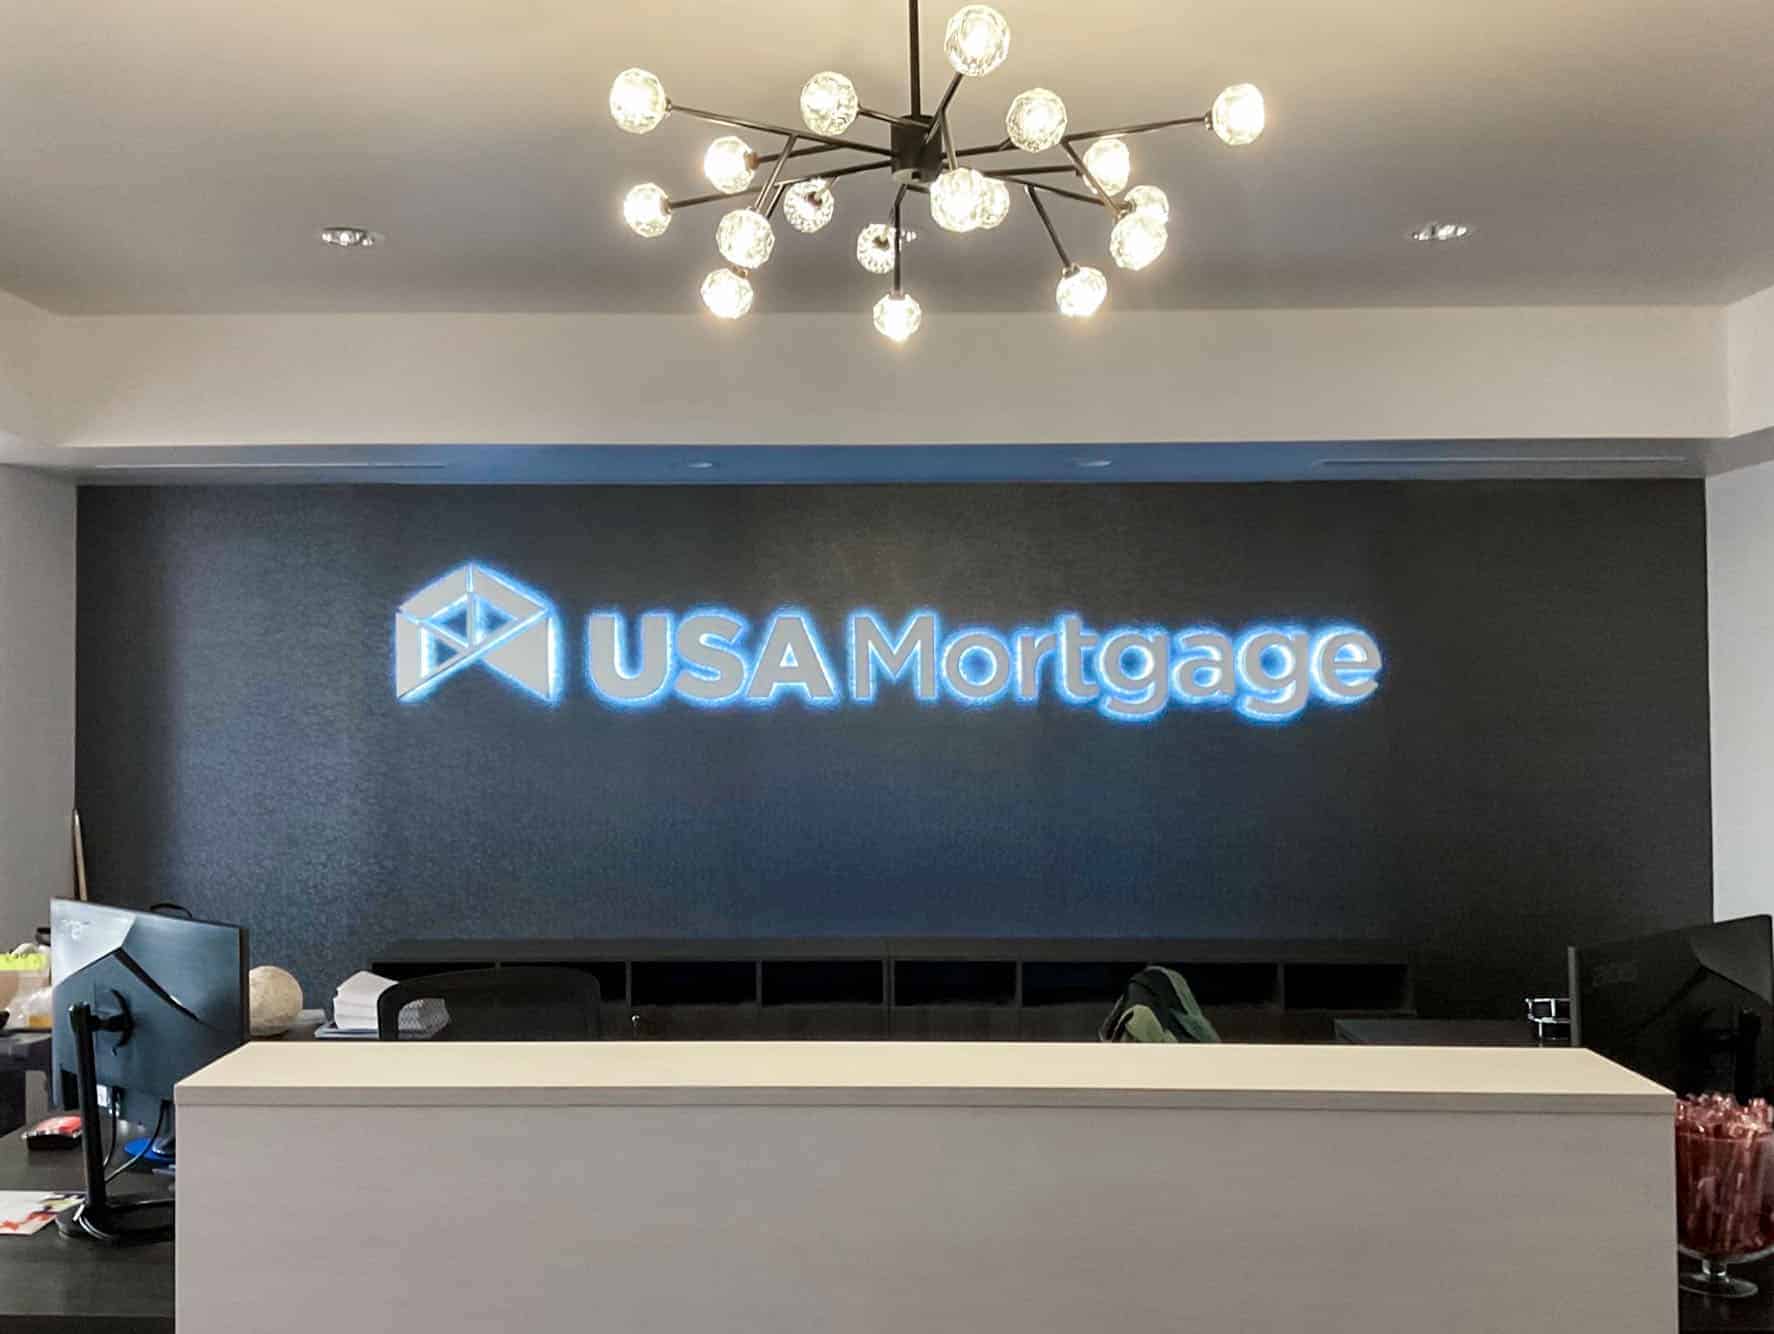 USA Mortgage lobby with illuminated lobby sign